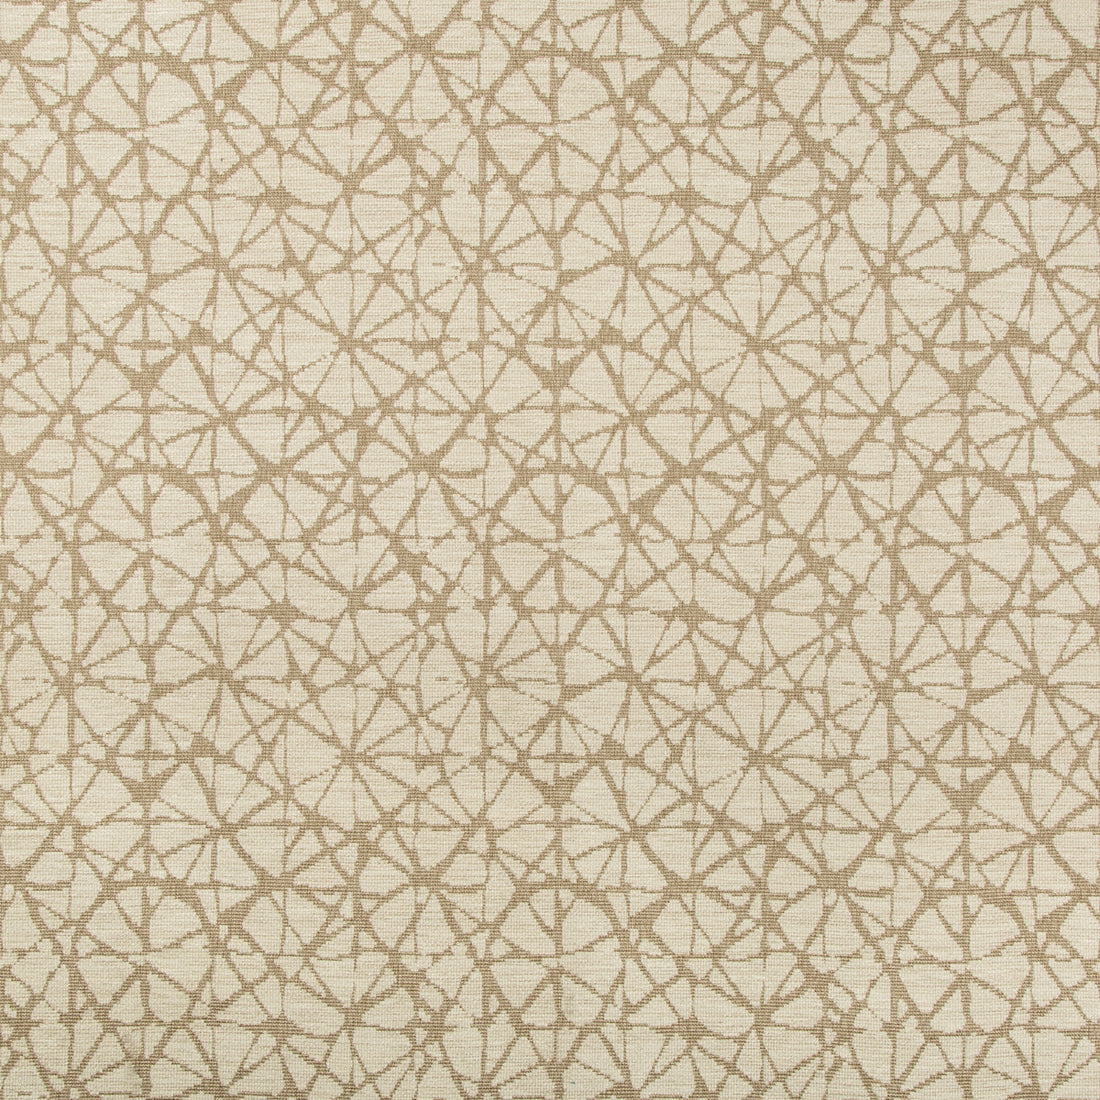 Kravet Design fabric in 35730-116 color - pattern 35730.116.0 - by Kravet Design